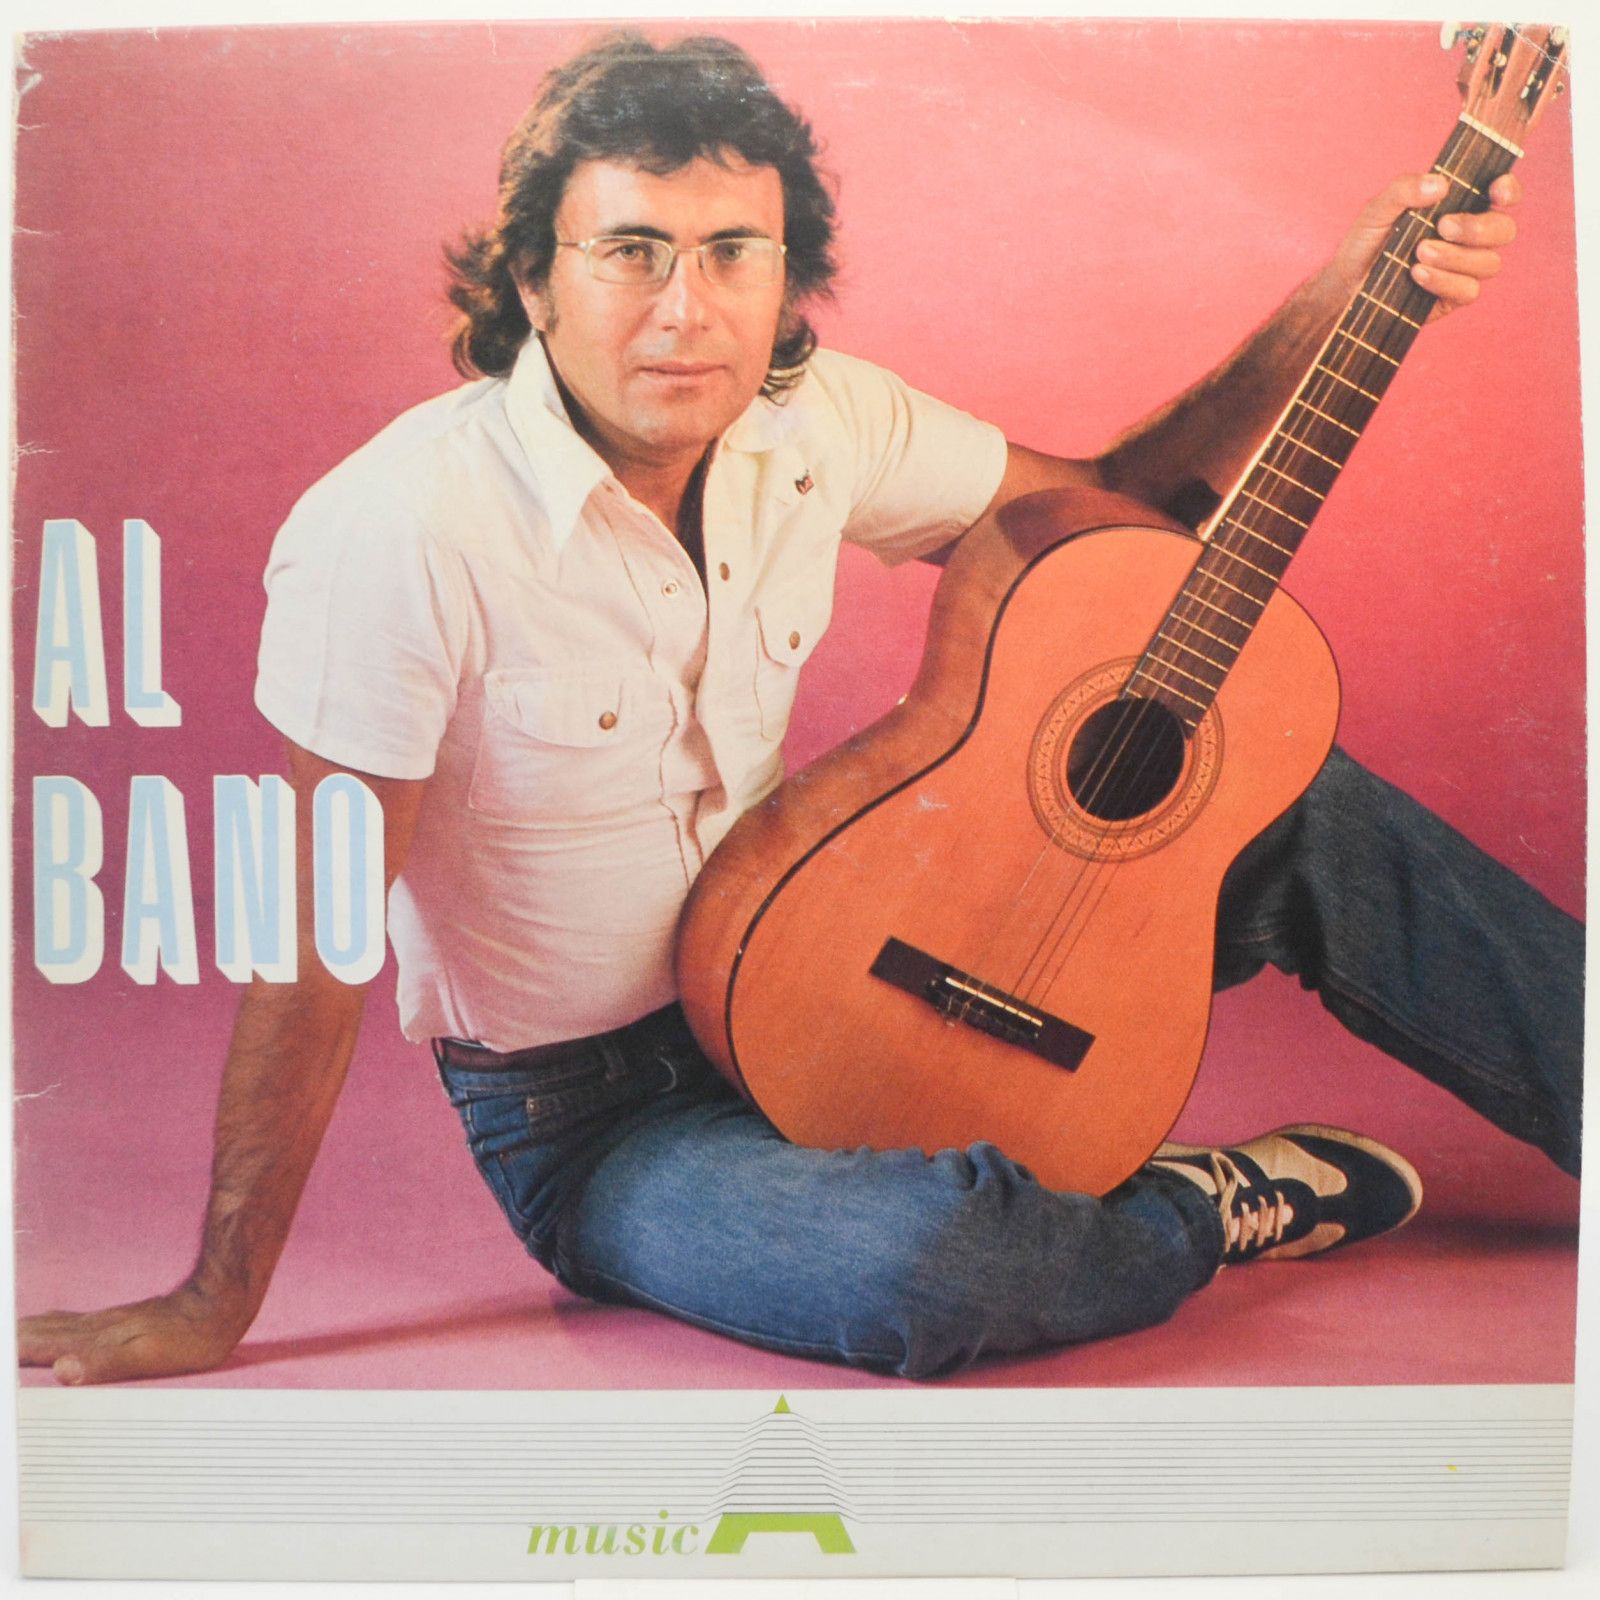 Al Bano — Al Bano (Italy), 1984